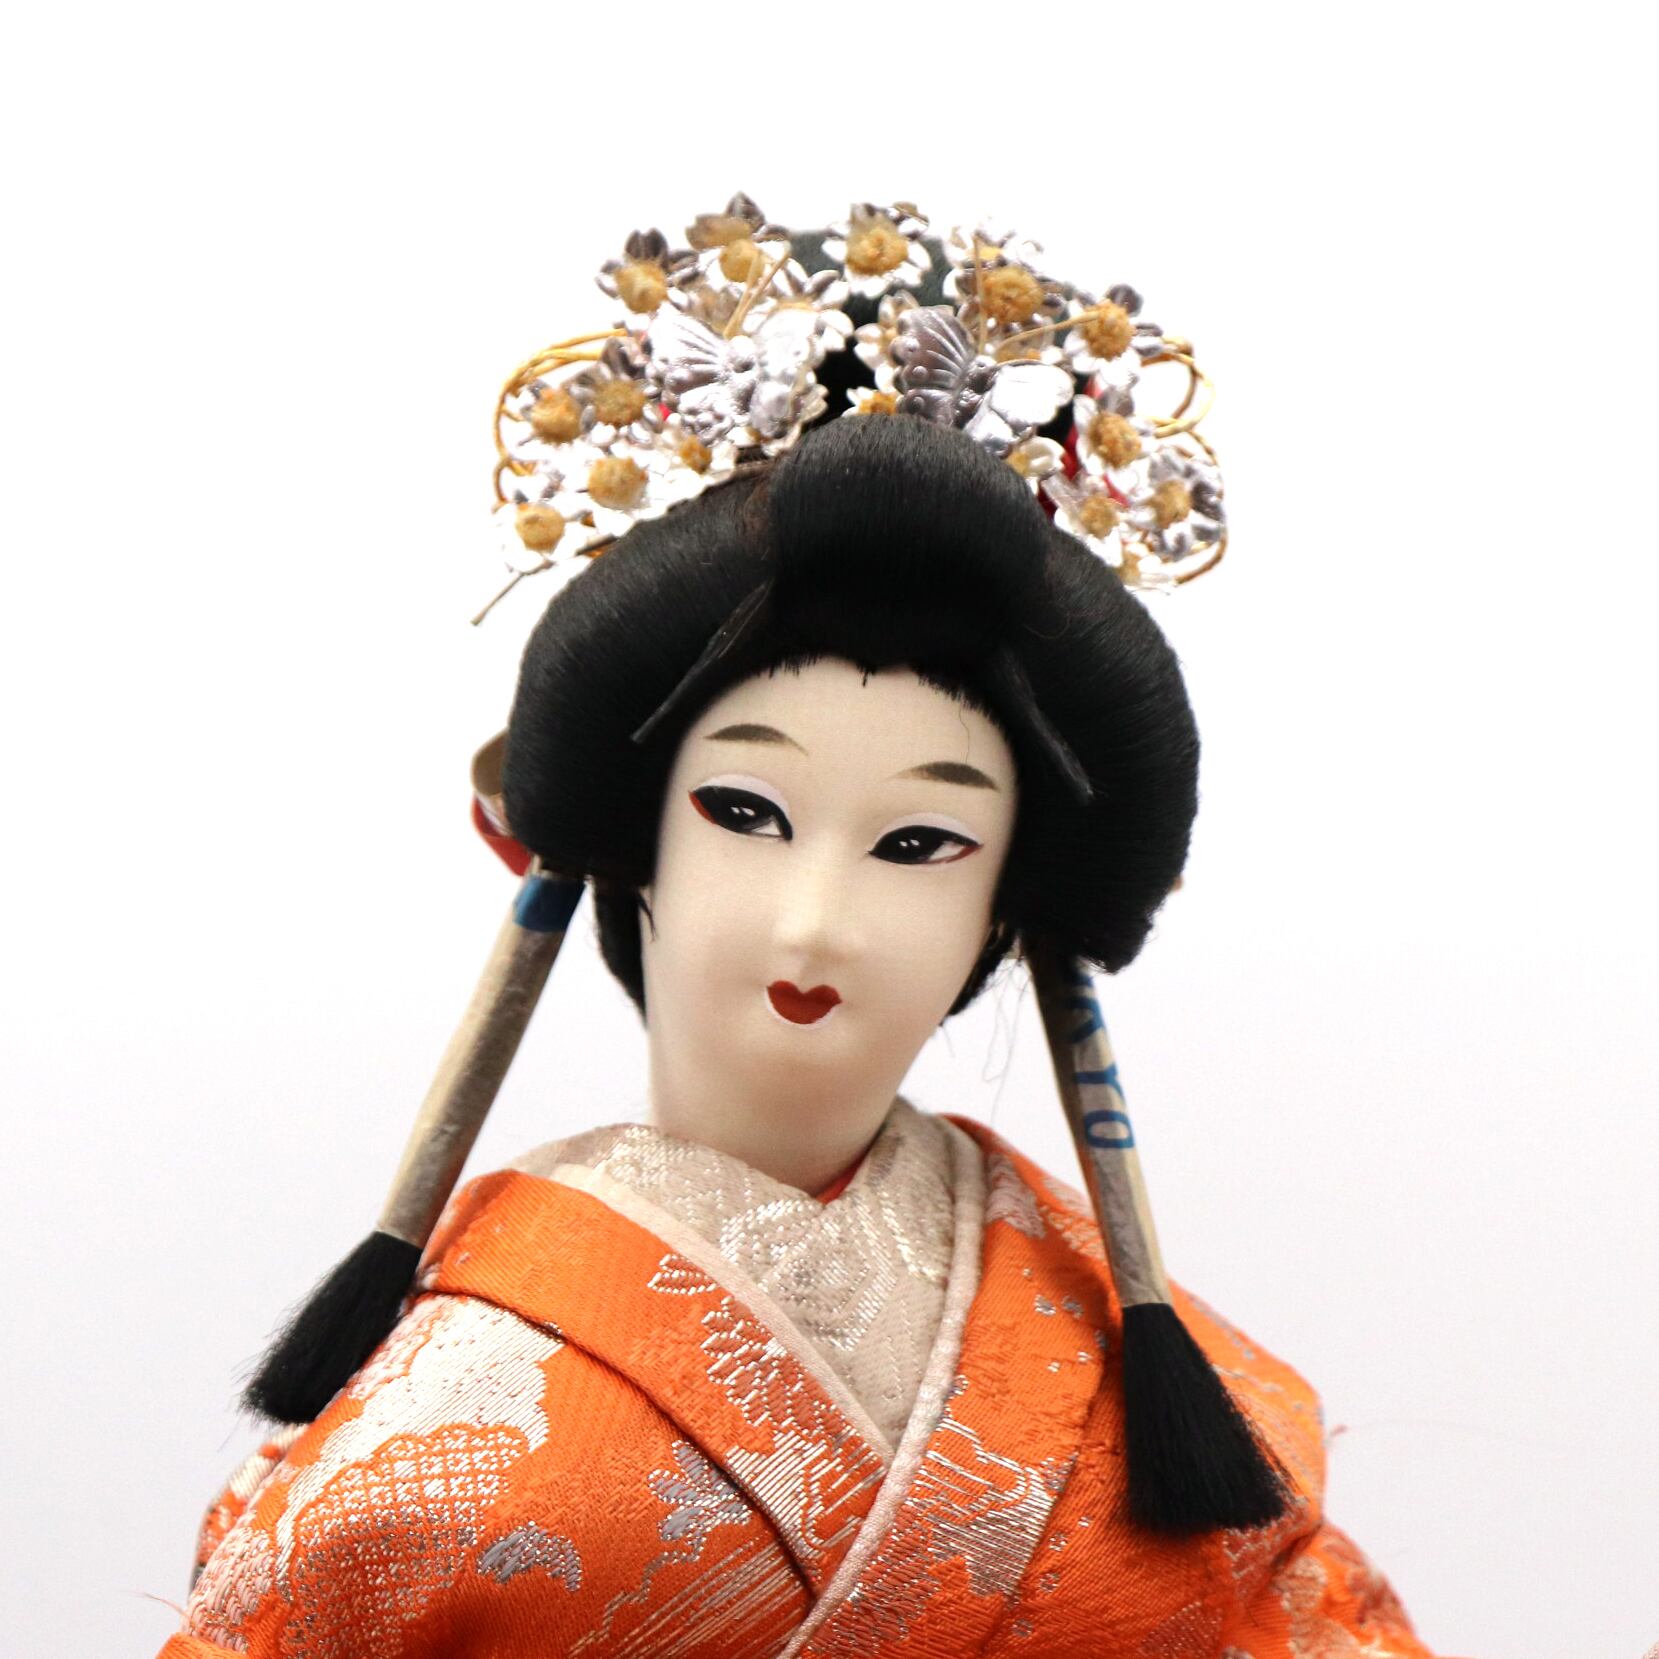 歌舞伎・八重垣姫・日本人形・尾山人形・No.201017-43・梱包サイズ140